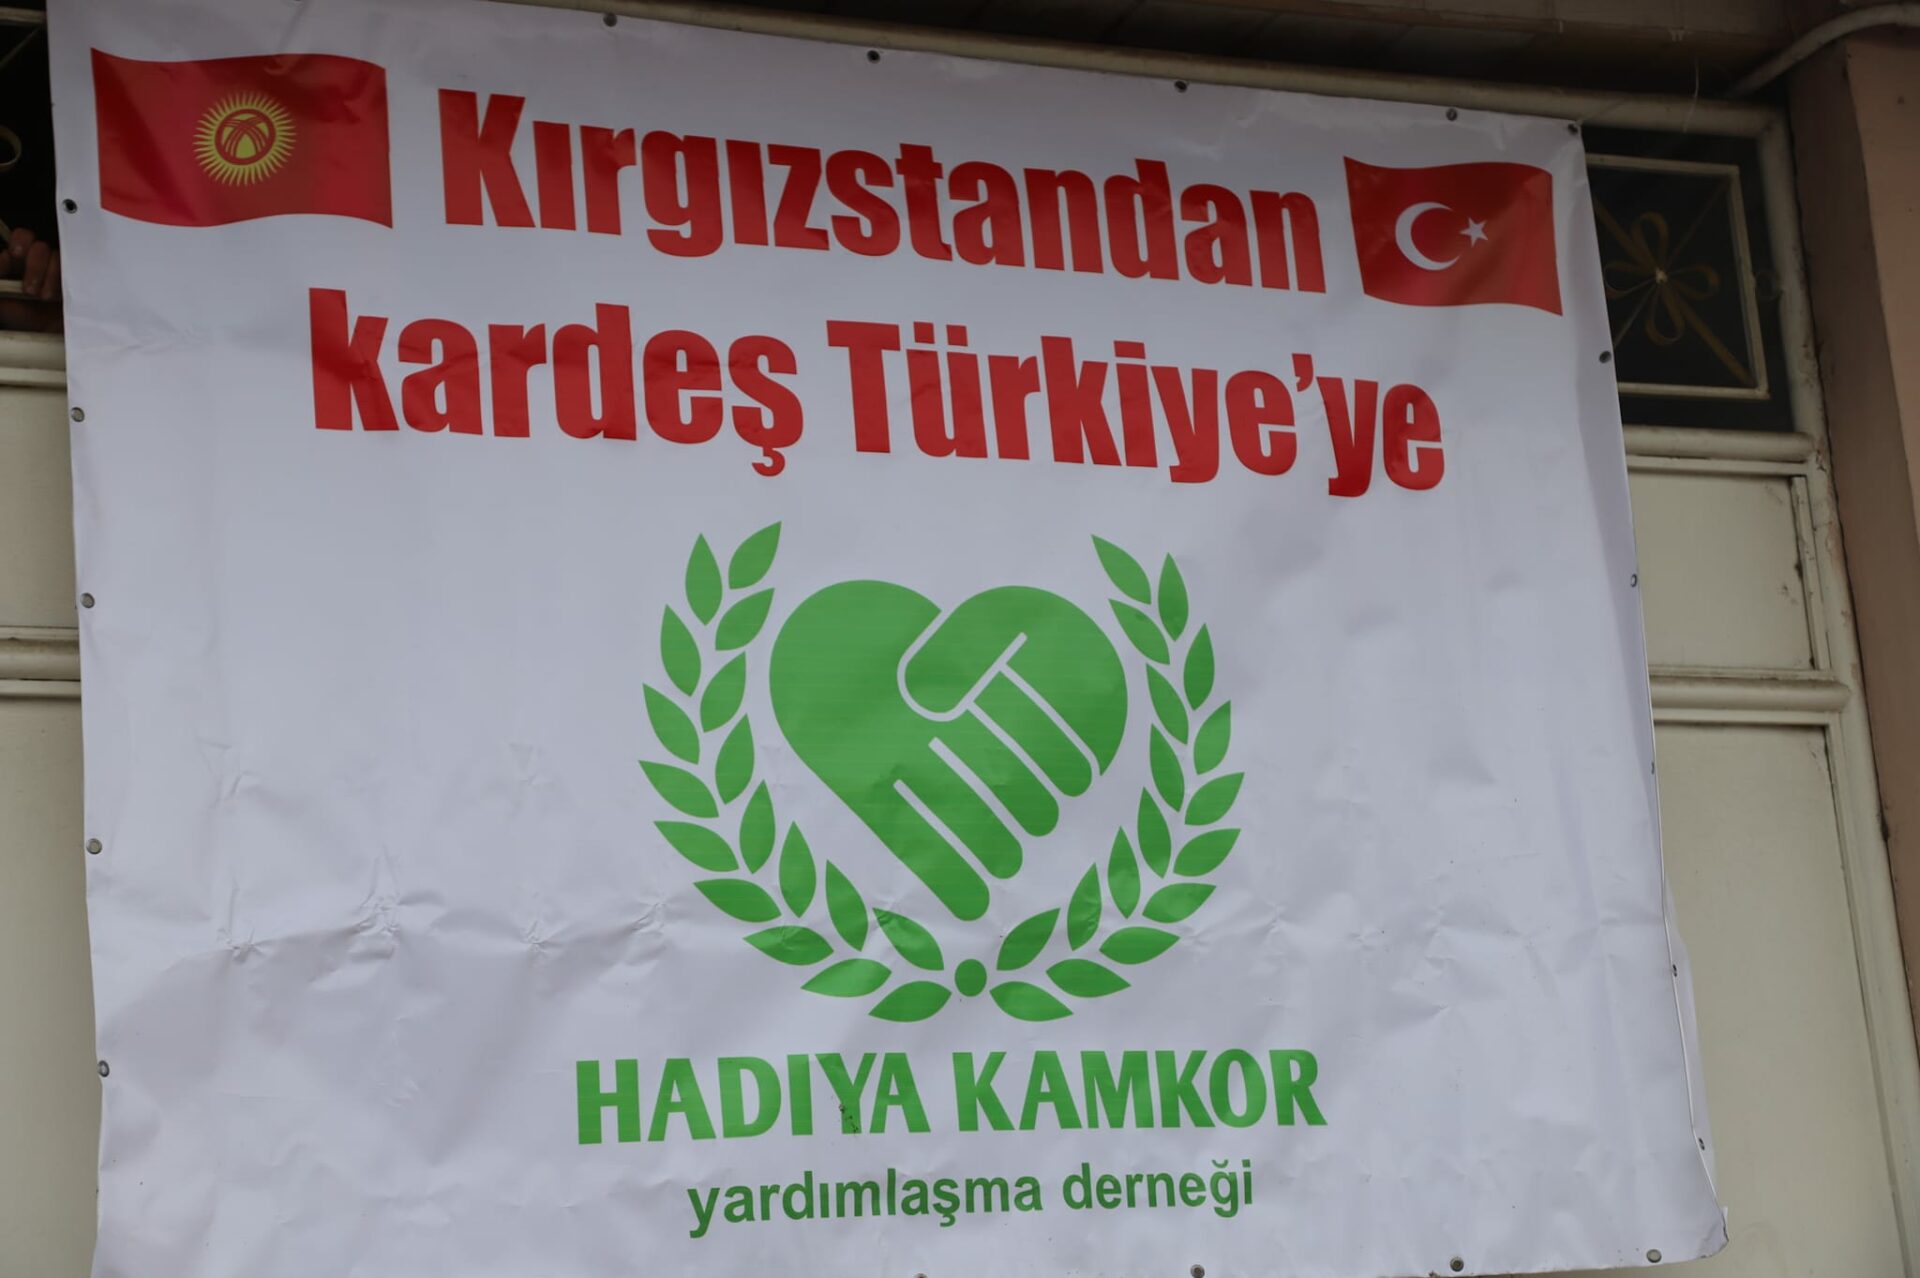 7 1 Жители двух областей Кыргызстана отправили гумпомощь в Турцию